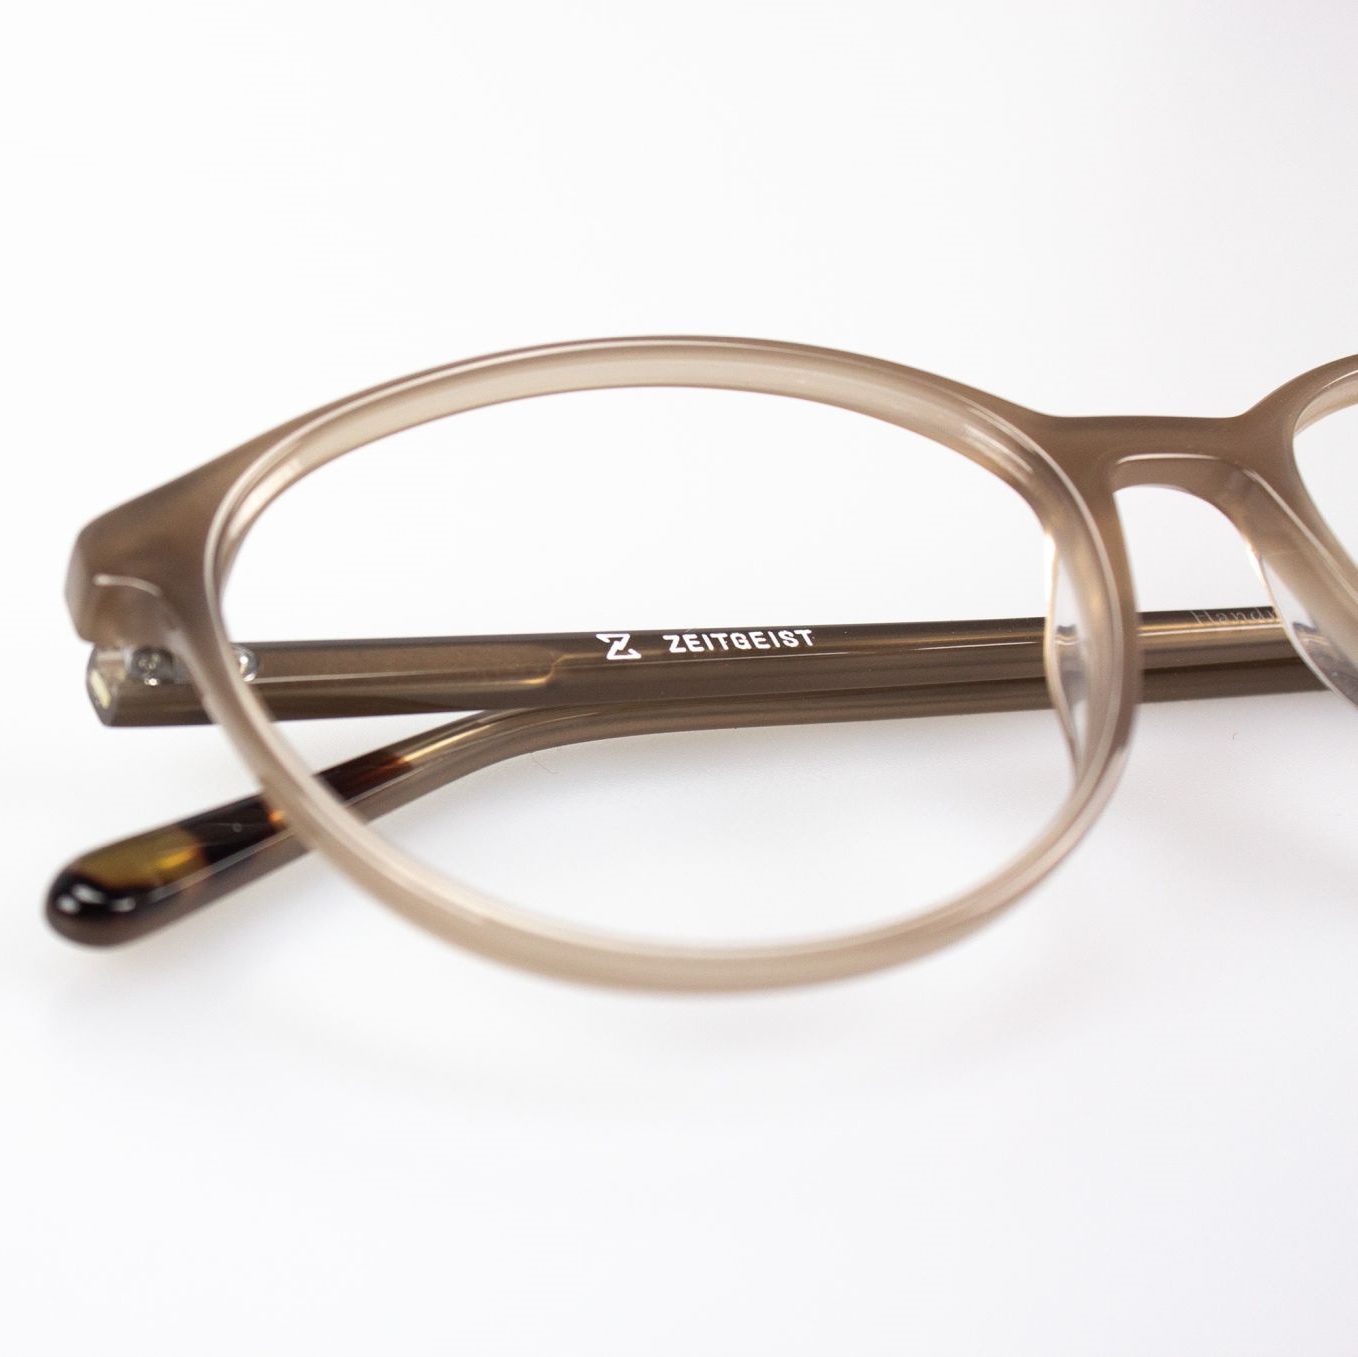 Produktbilder Brillen & Sonnenbrillen vom Profi